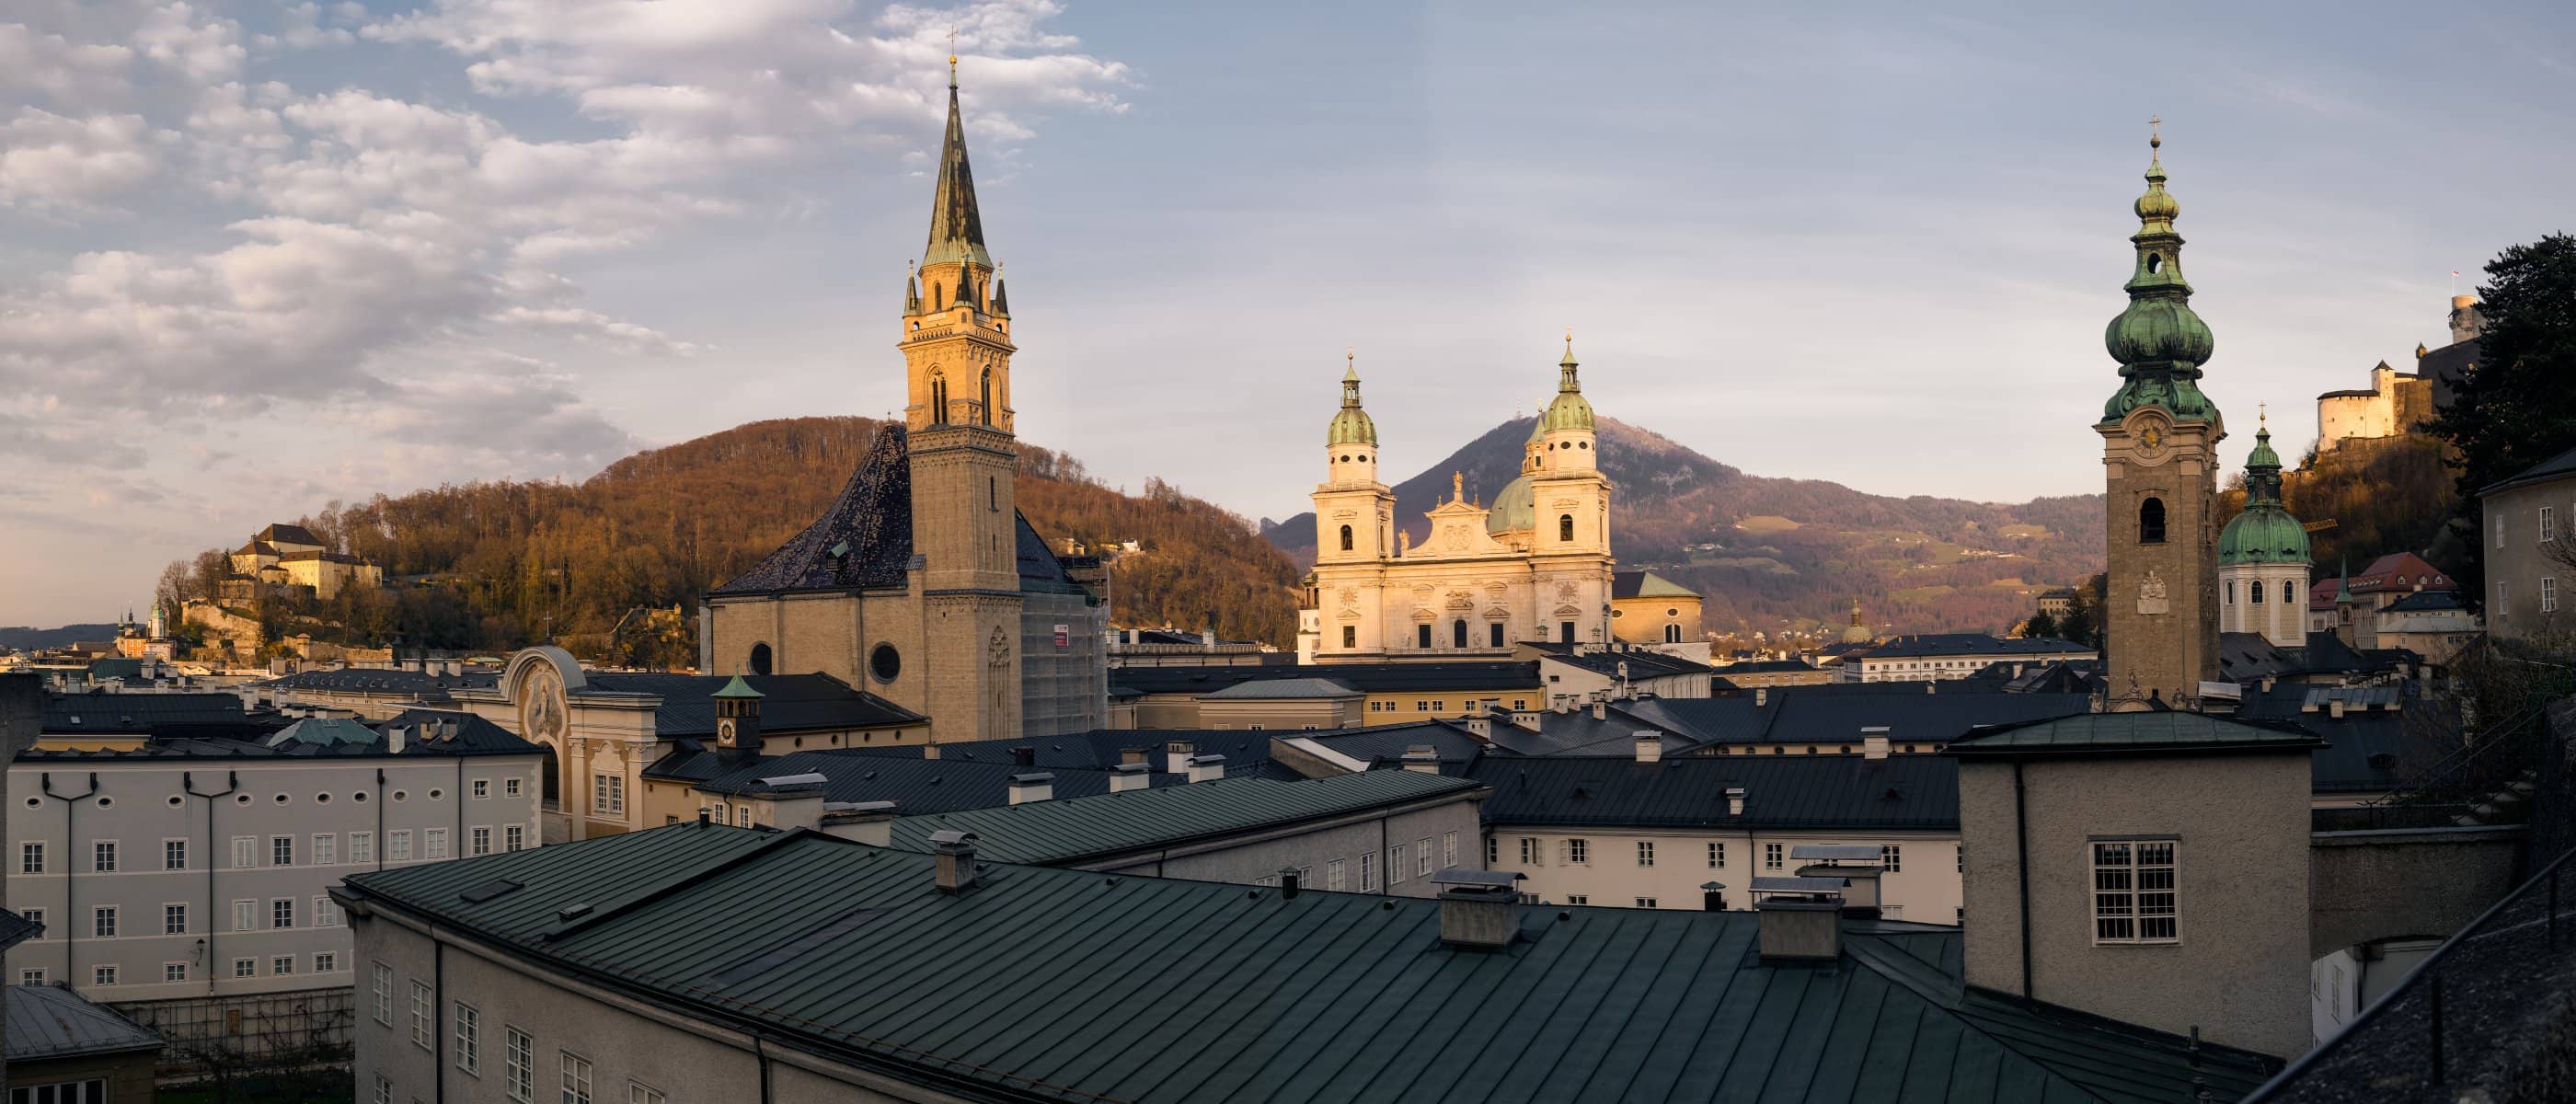 Dieses Bild zeigt die Altstadt der Stadt Salzburg